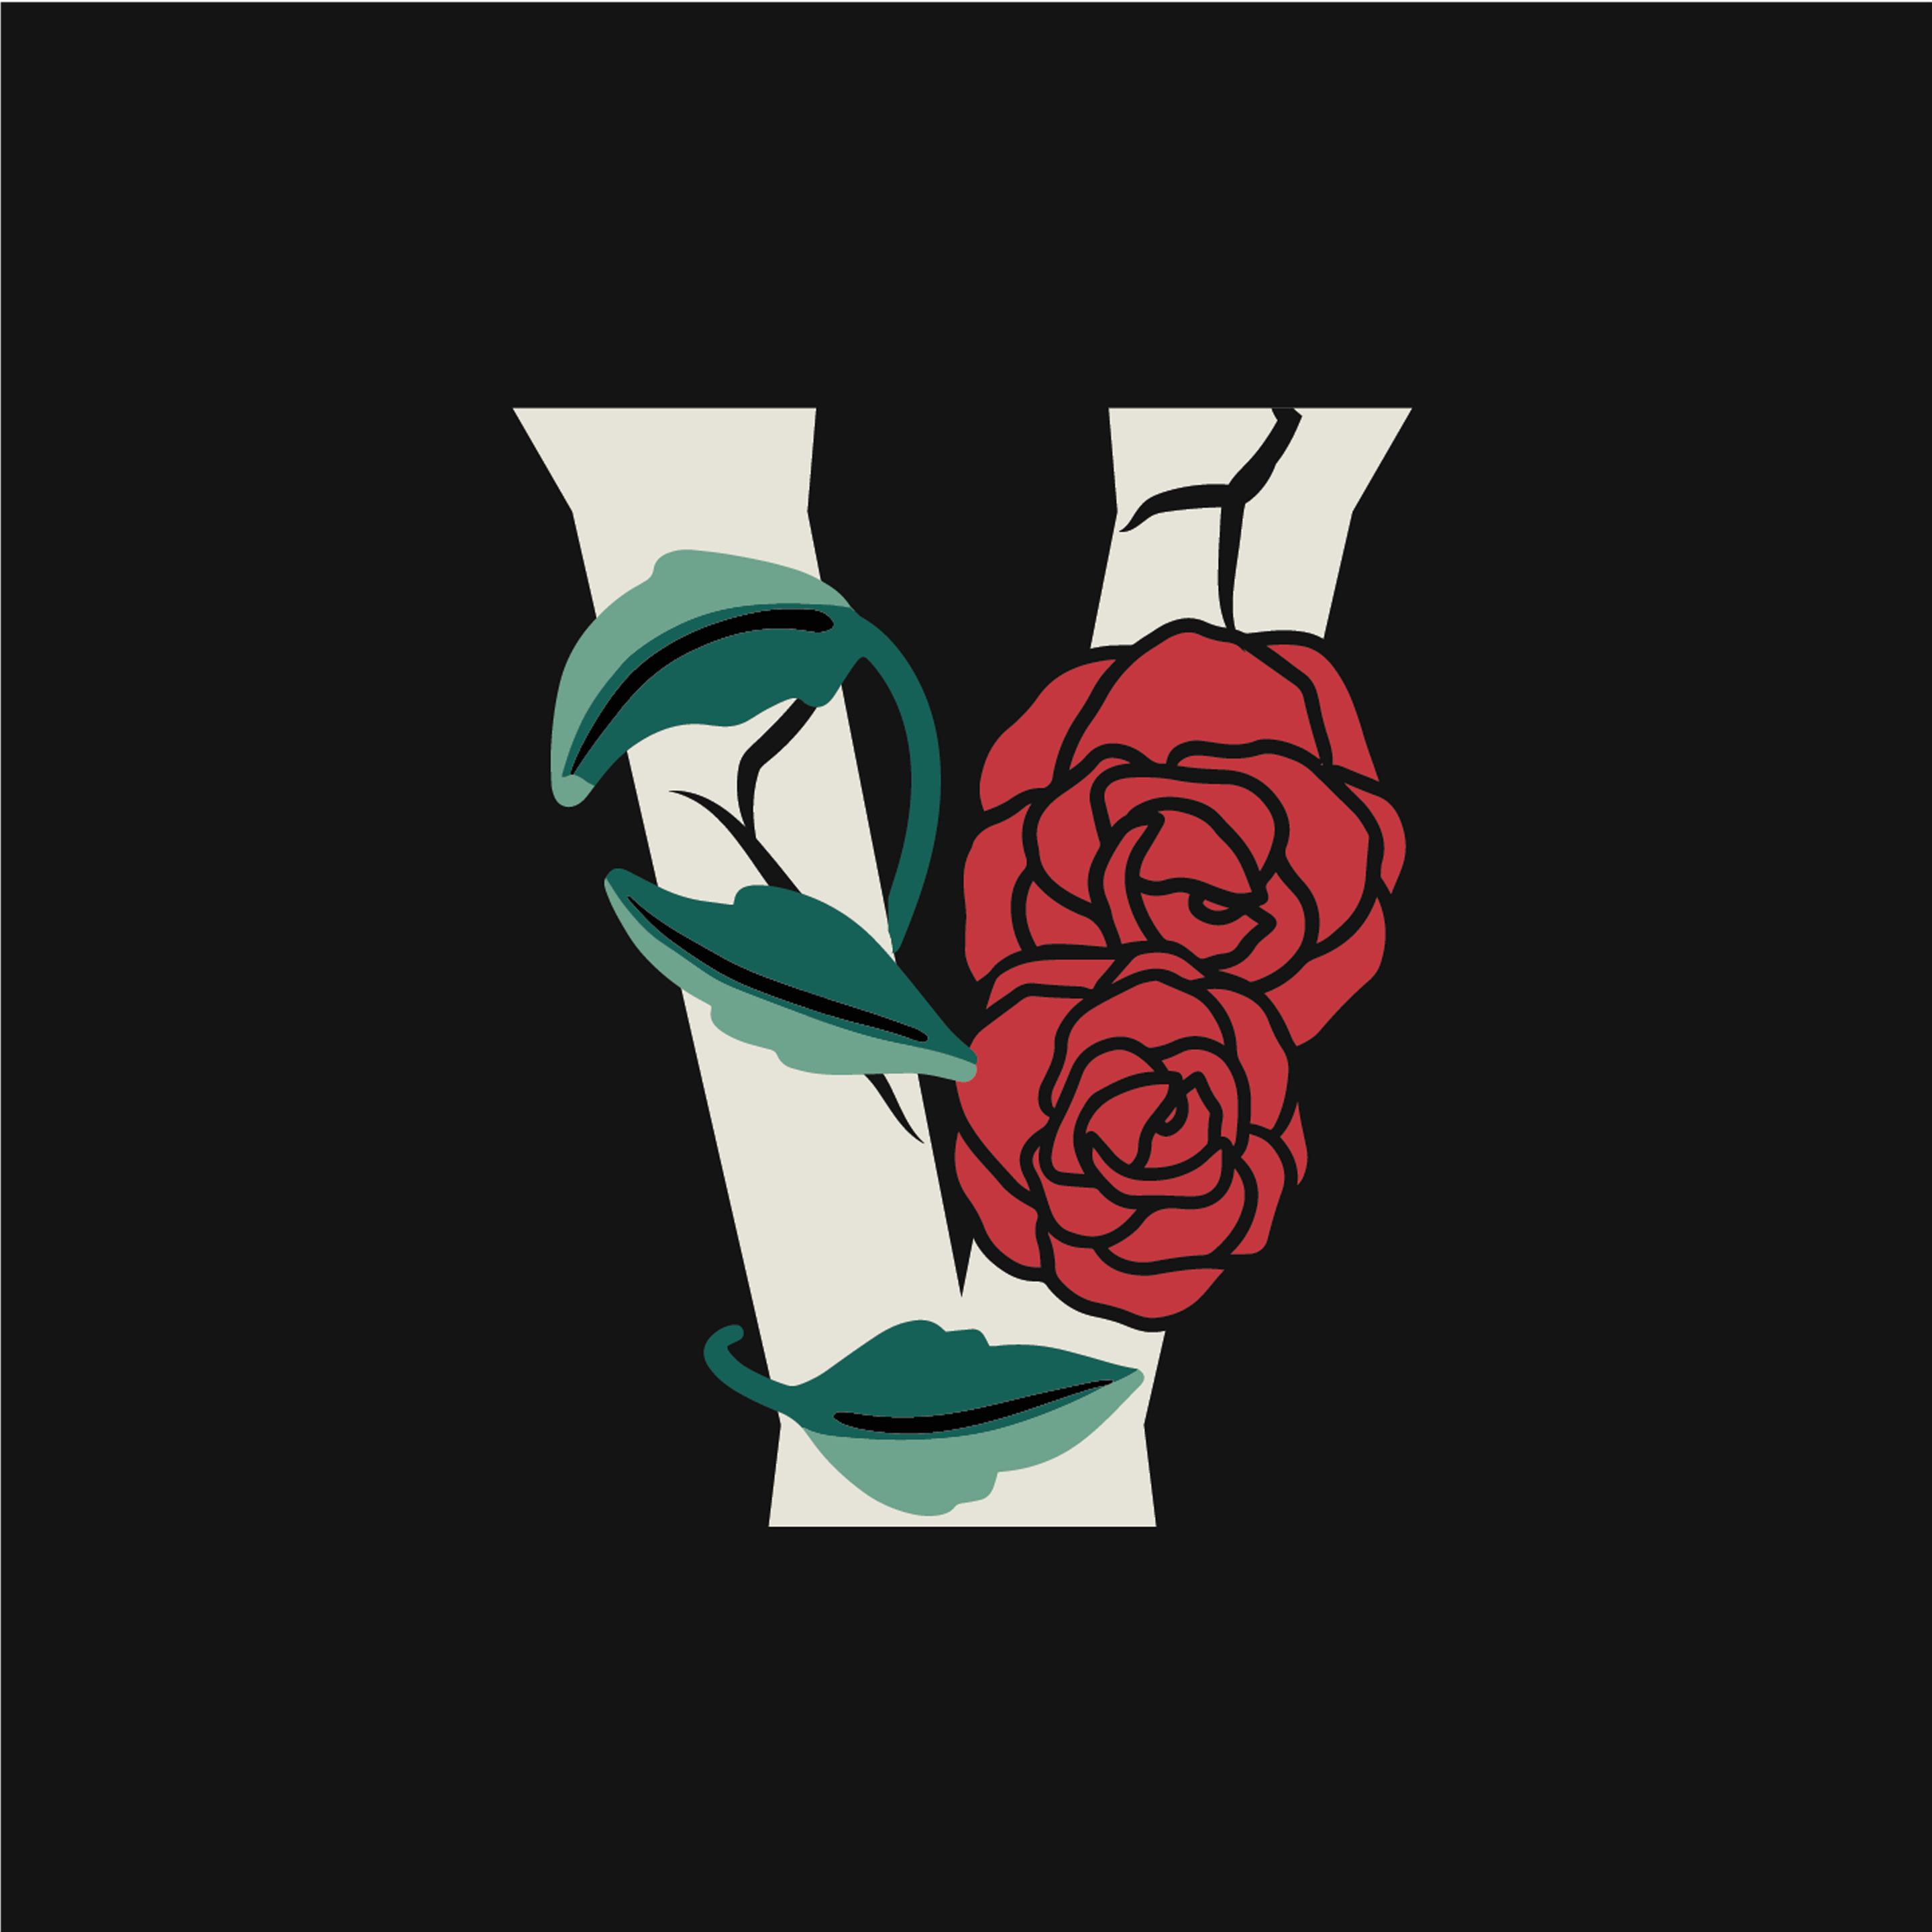 rose-letter-v-design-theme